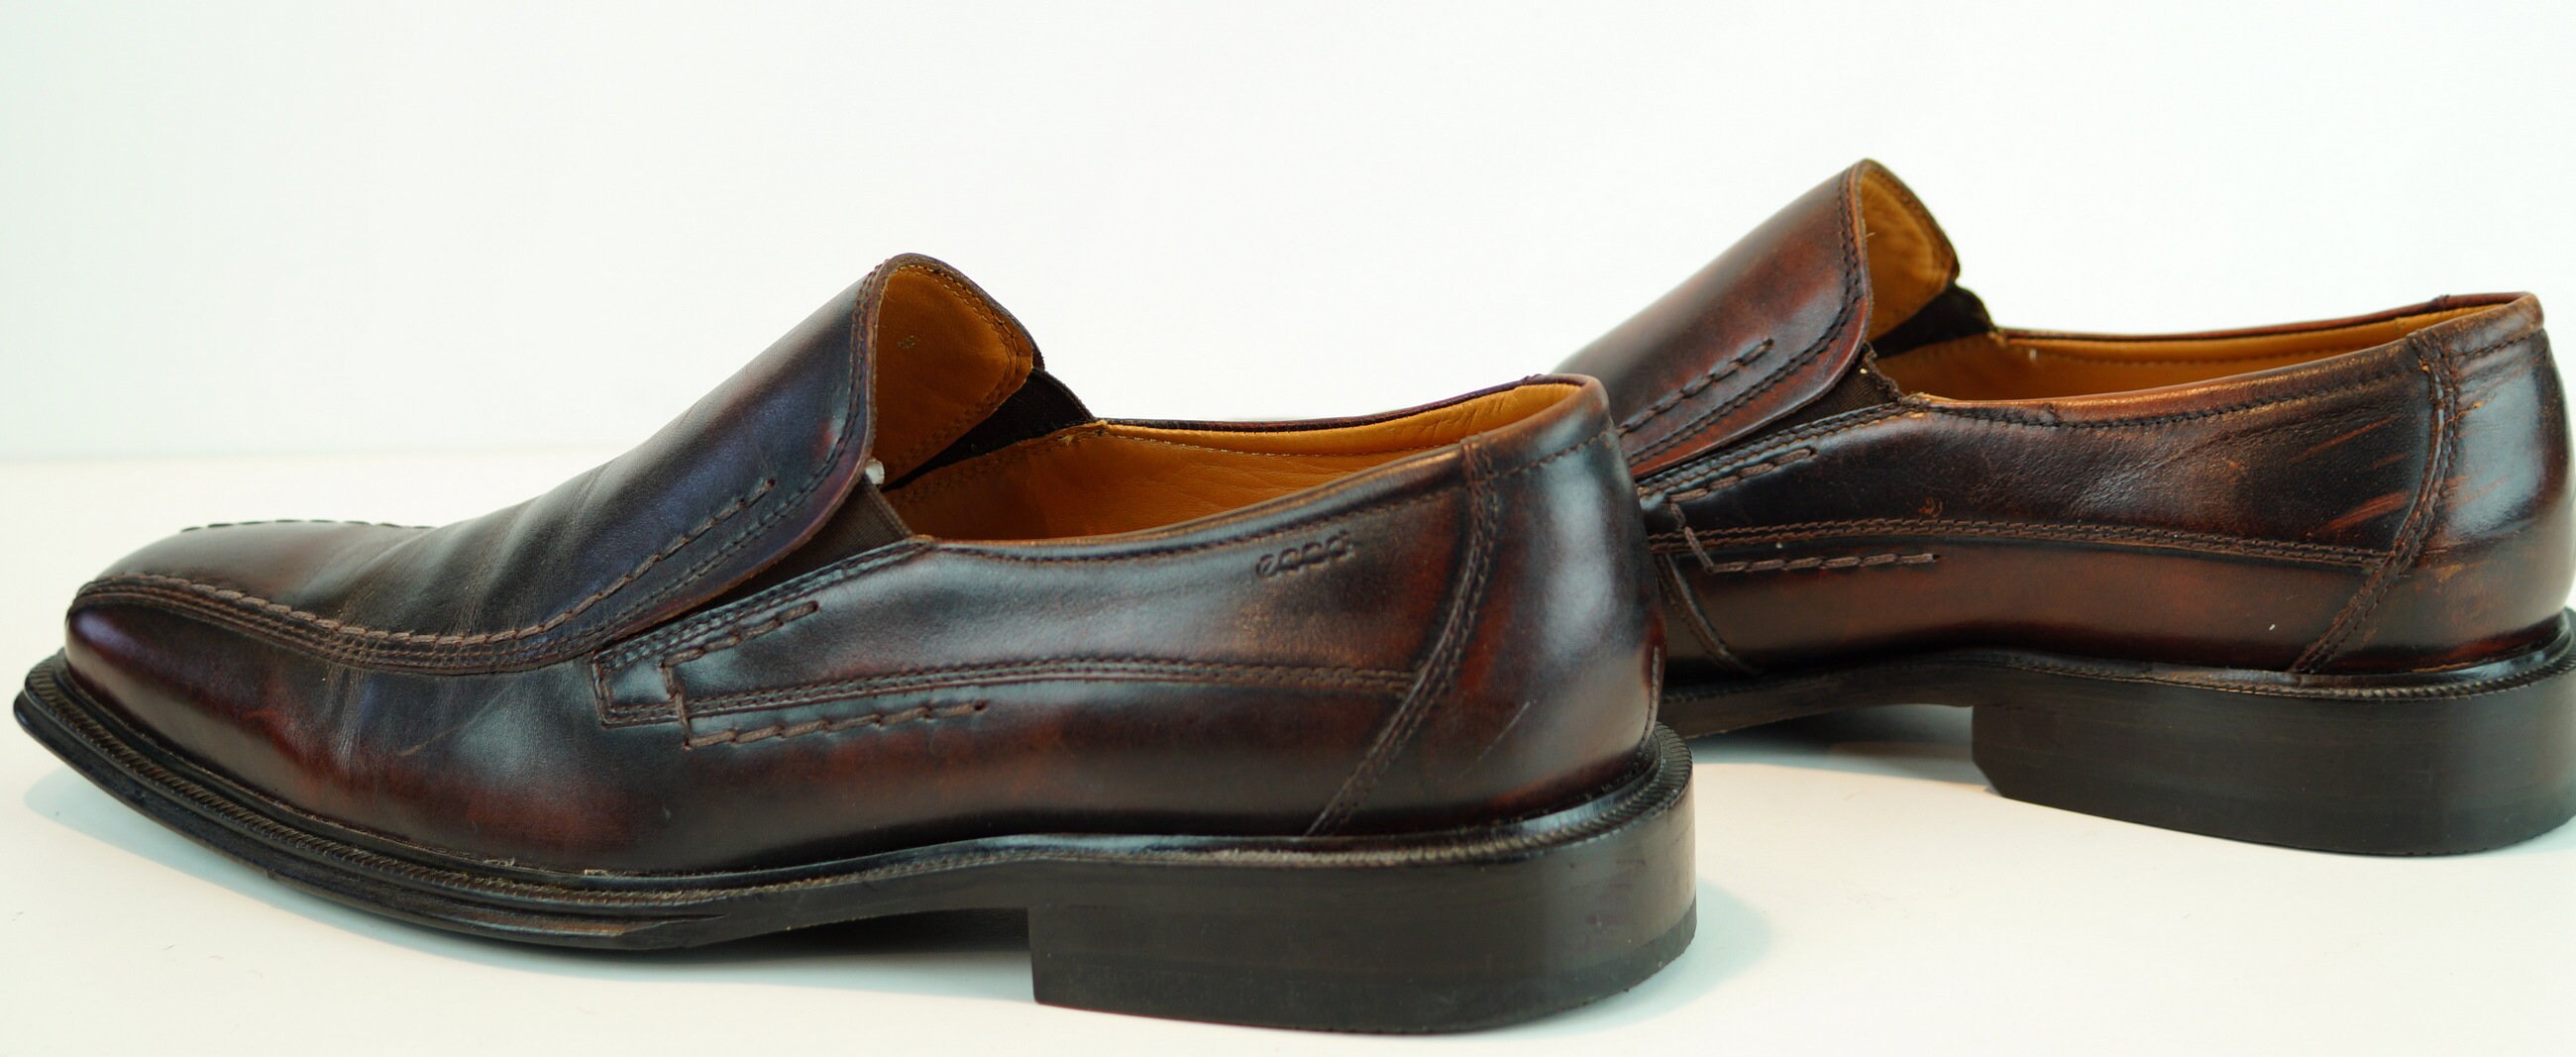 casual business schoenen US 7 EUR 39 UK 6 zool lengte 29 cm 11,4 inc oxford classic zwarte laarzen Herenmode glanzend gelakte kostuumschoenen Schoenen Herenschoenen Verkleden Schoenen 